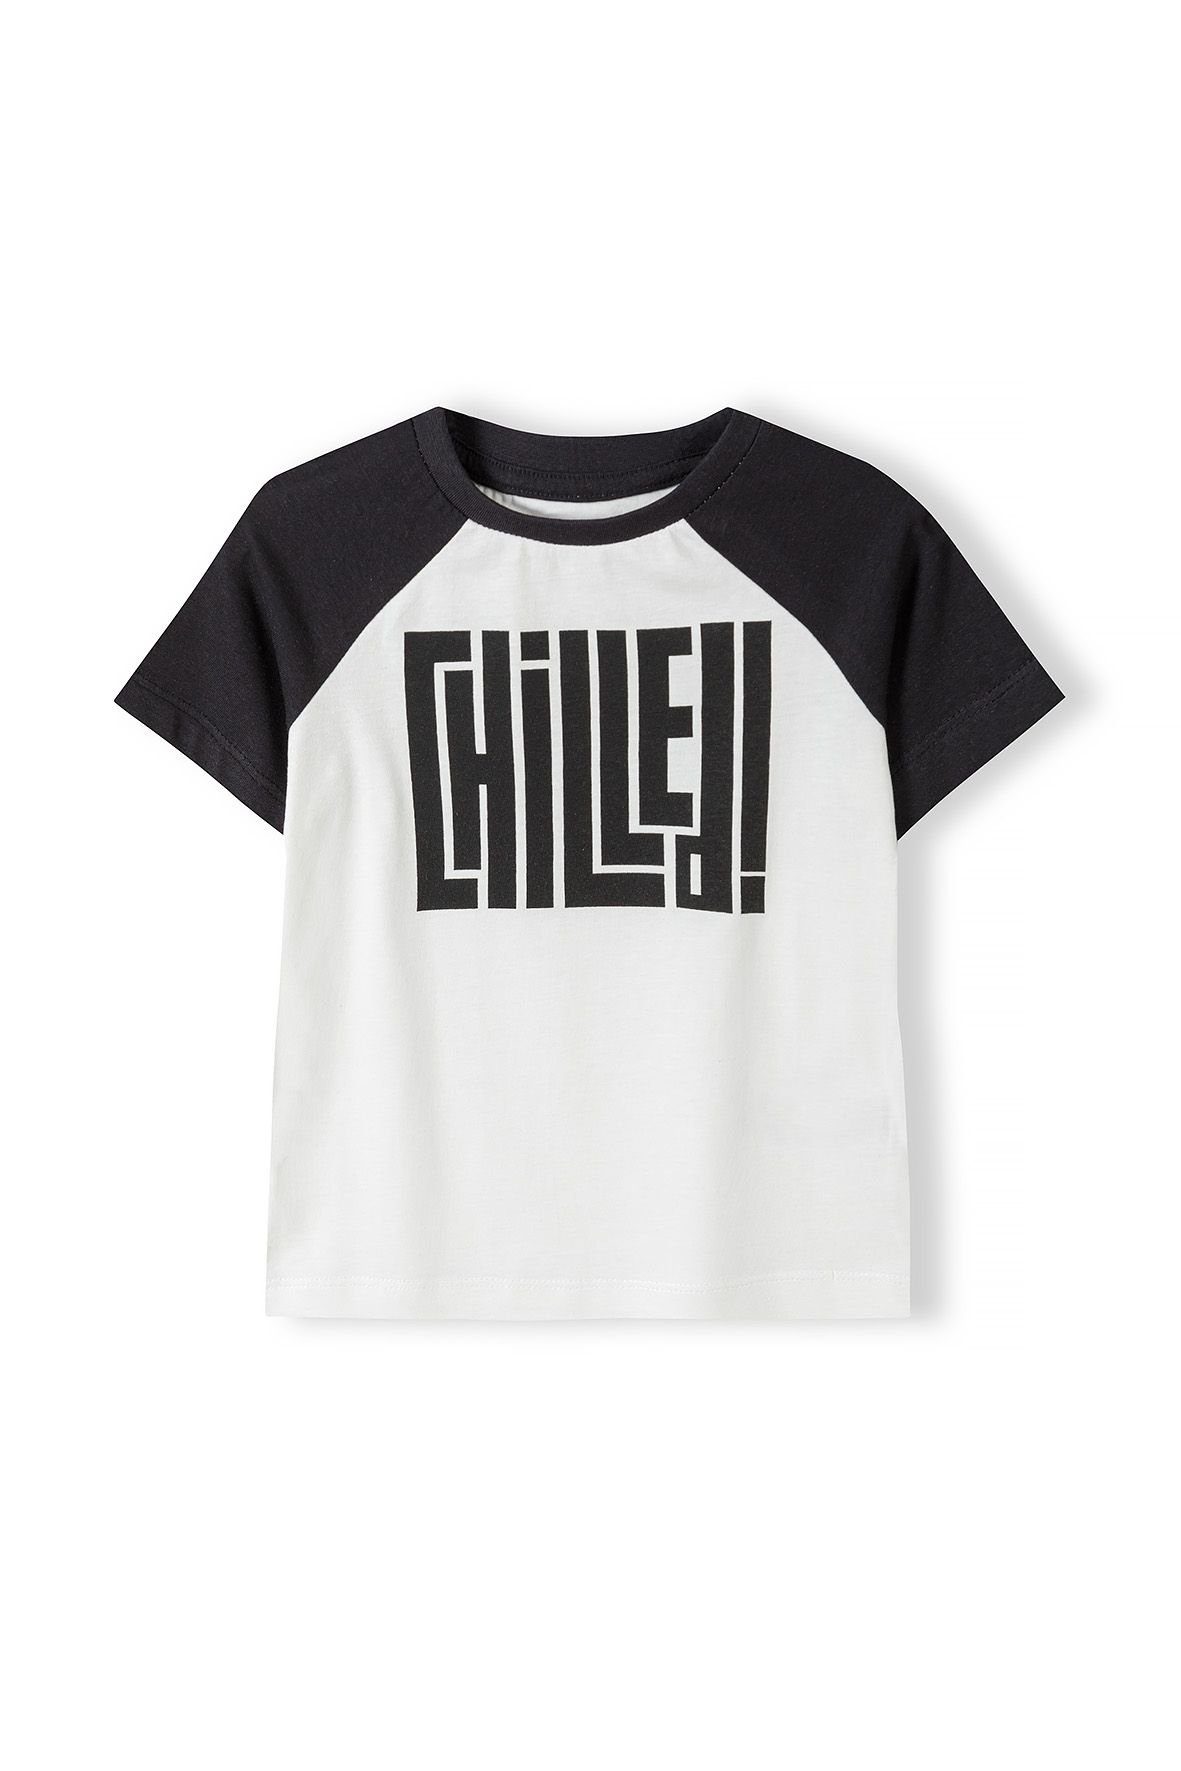 MINOTI T-Shirt Sommer T-Shirt mit bunten Ärmeln (3y-14y) Cremeweiß